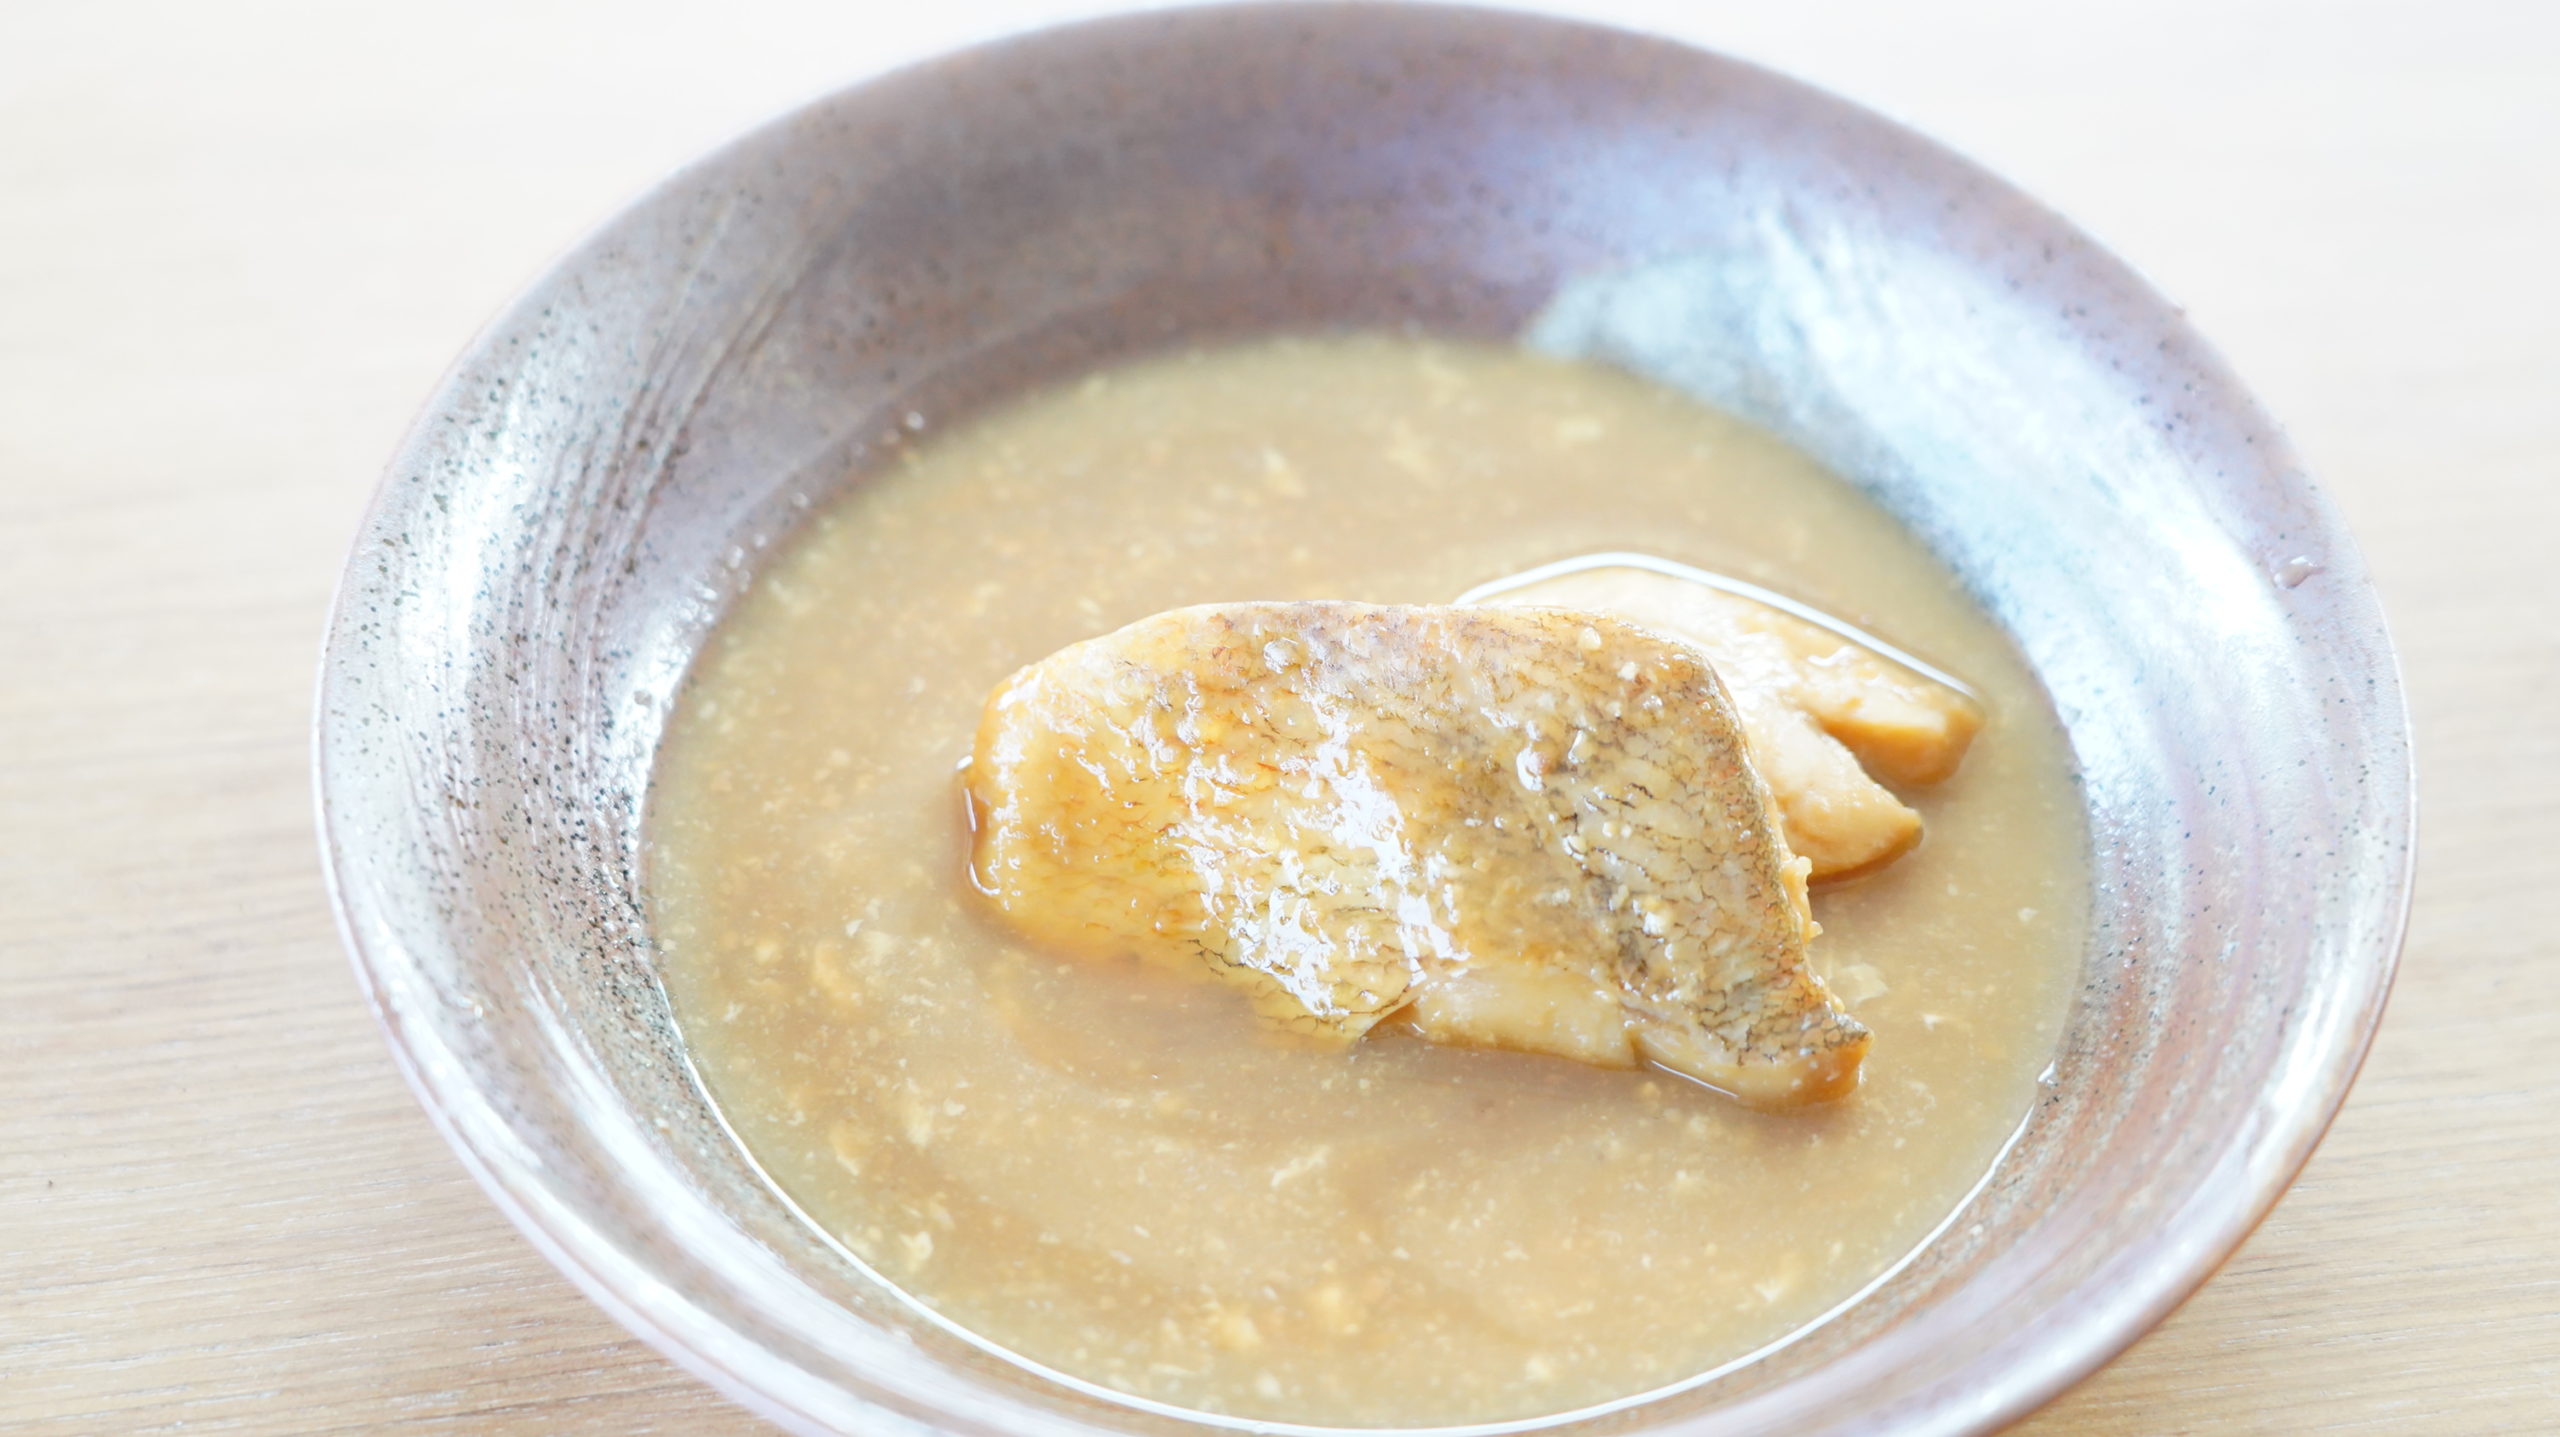 生協coop宅配の冷凍食品「赤魚の味噌煮」を皿に盛りつけた写真